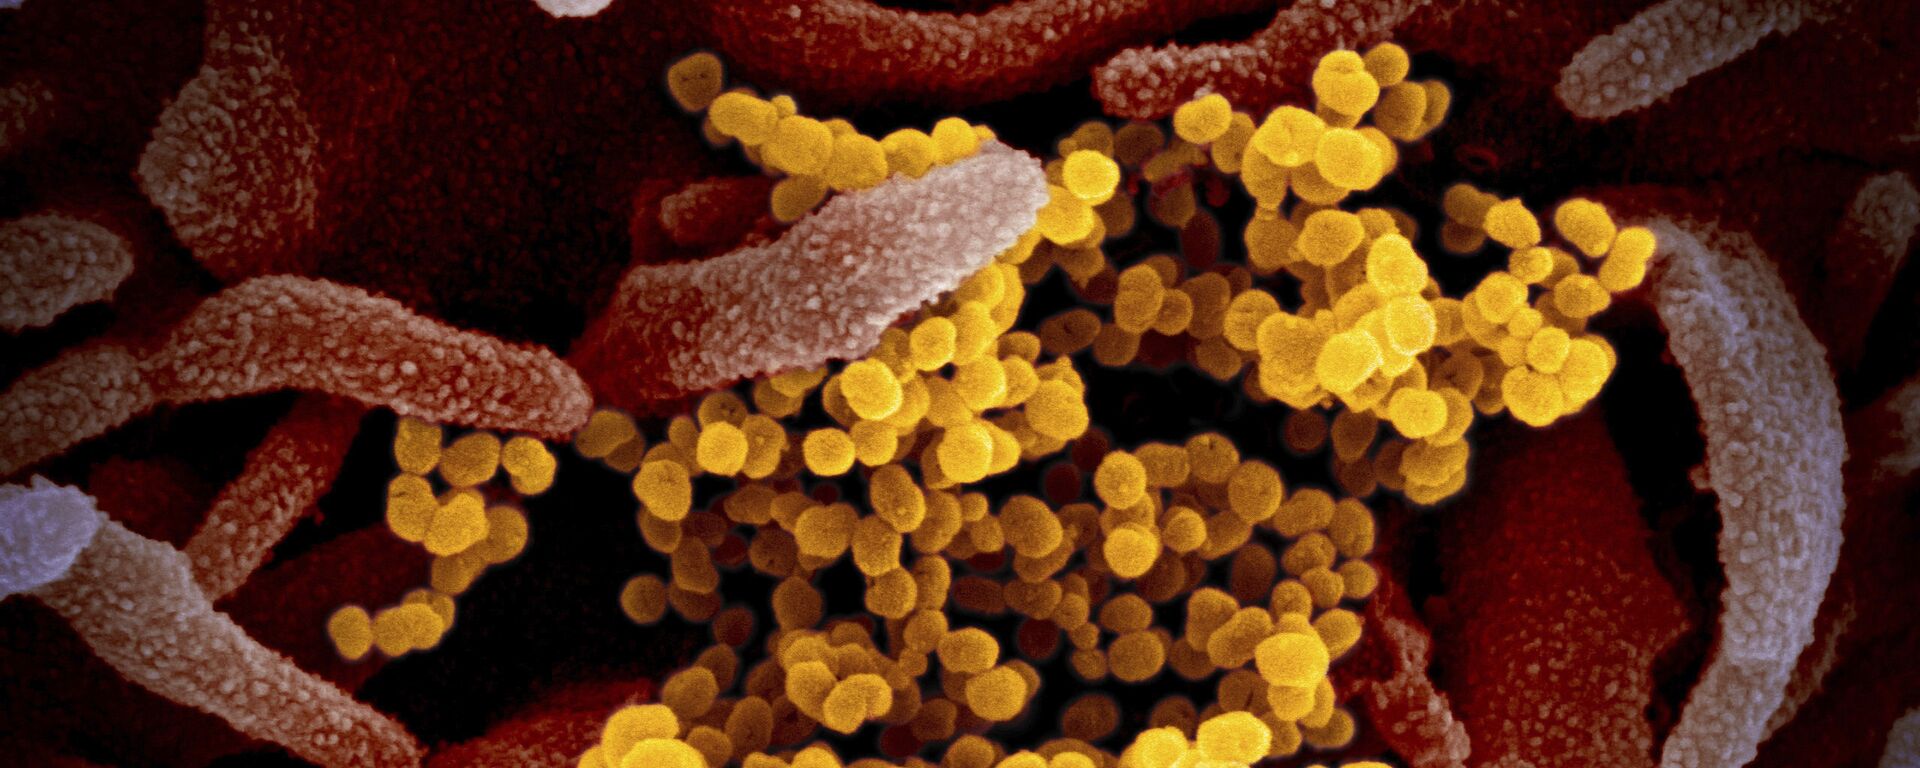 Изображение коронавируса SARS-CoV-2(обозначен желтым цветом), который поражает клетки человека - Sputnik Ўзбекистон, 1920, 19.04.2021